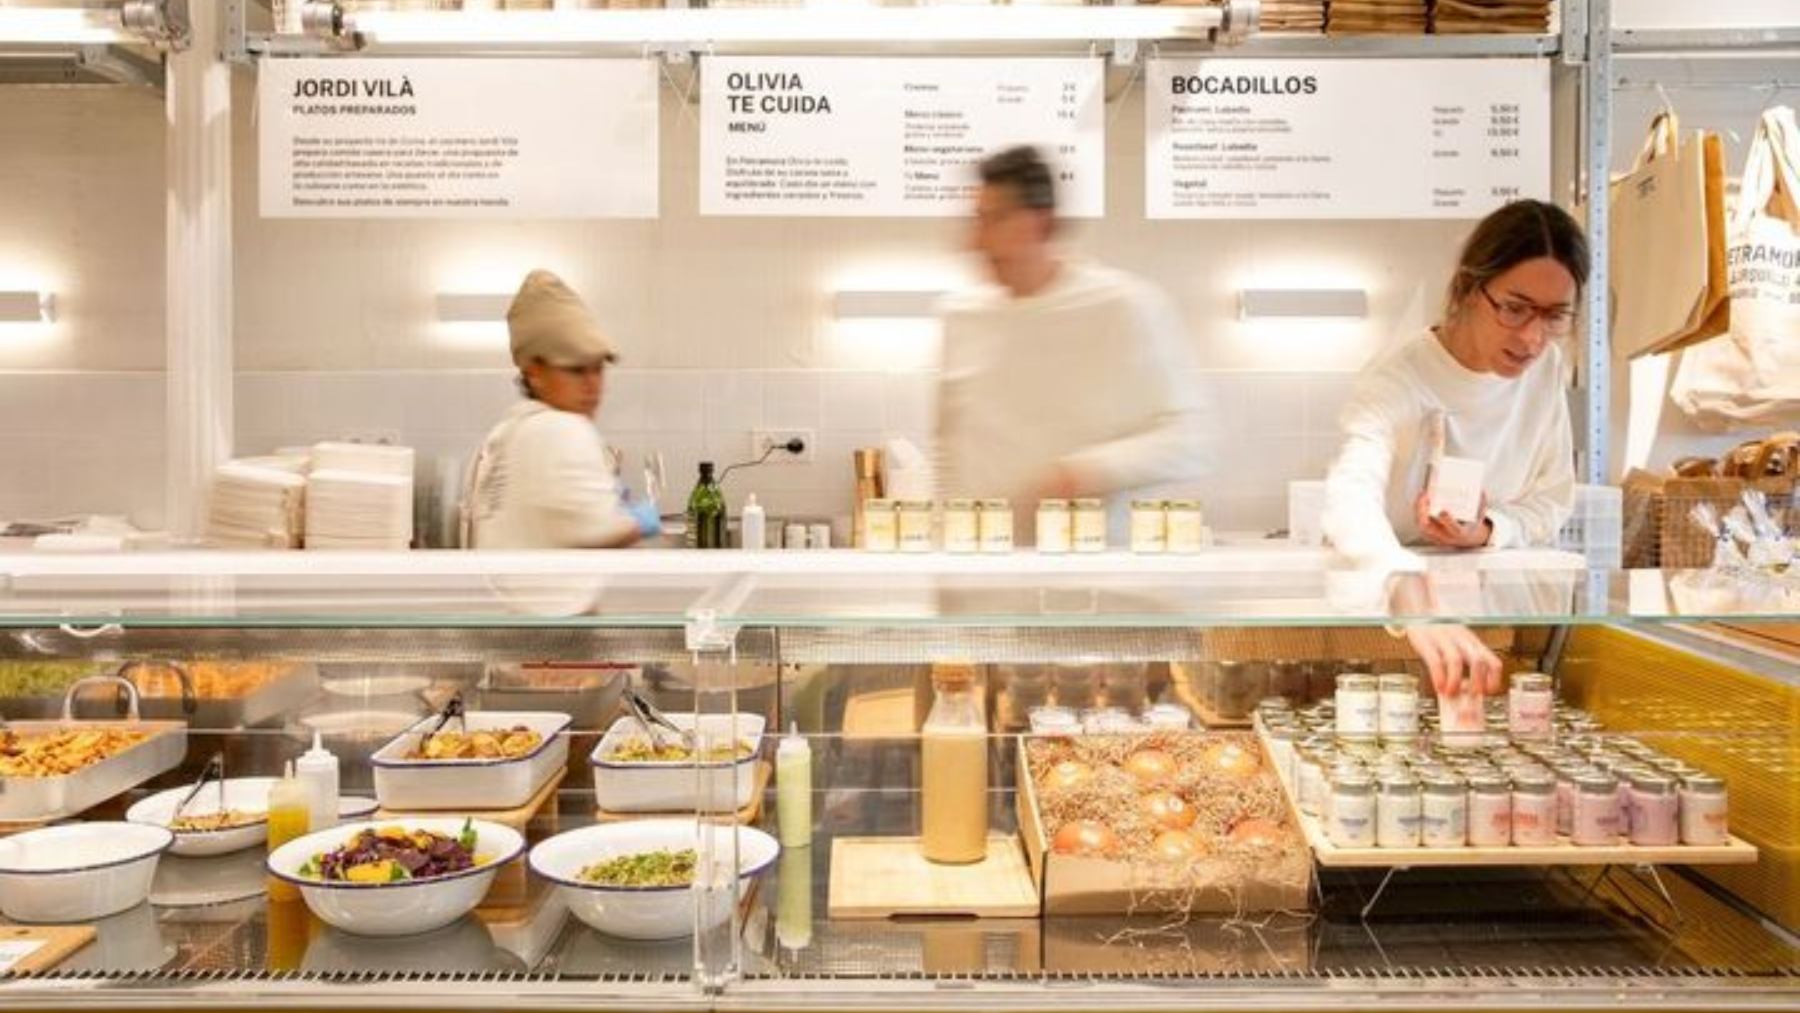 Petramora, la tienda gourmet que revoluciona Madrid: «Todo ha sido elegido con cariño»